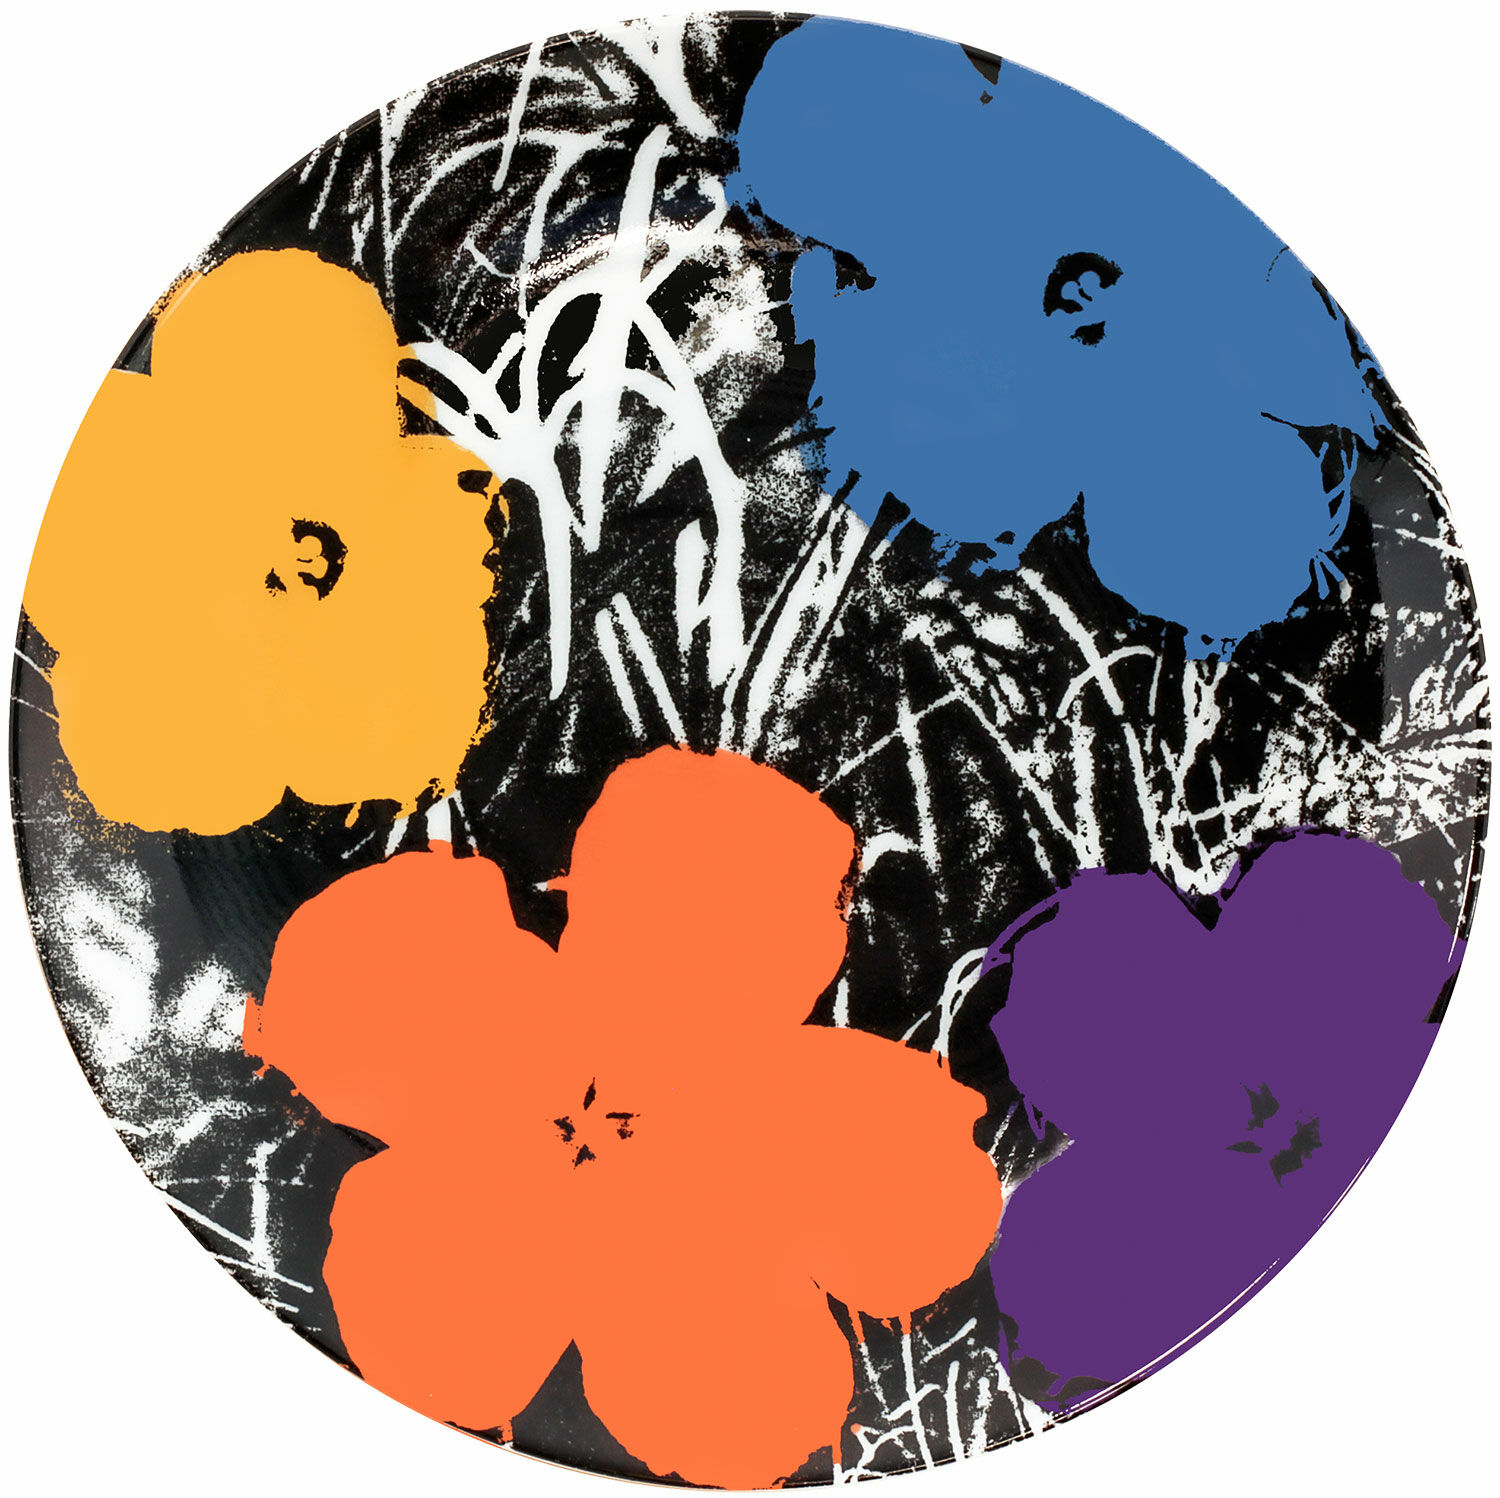 Porseleinen bord "Bloemen" (kleurrijk) von Andy Warhol